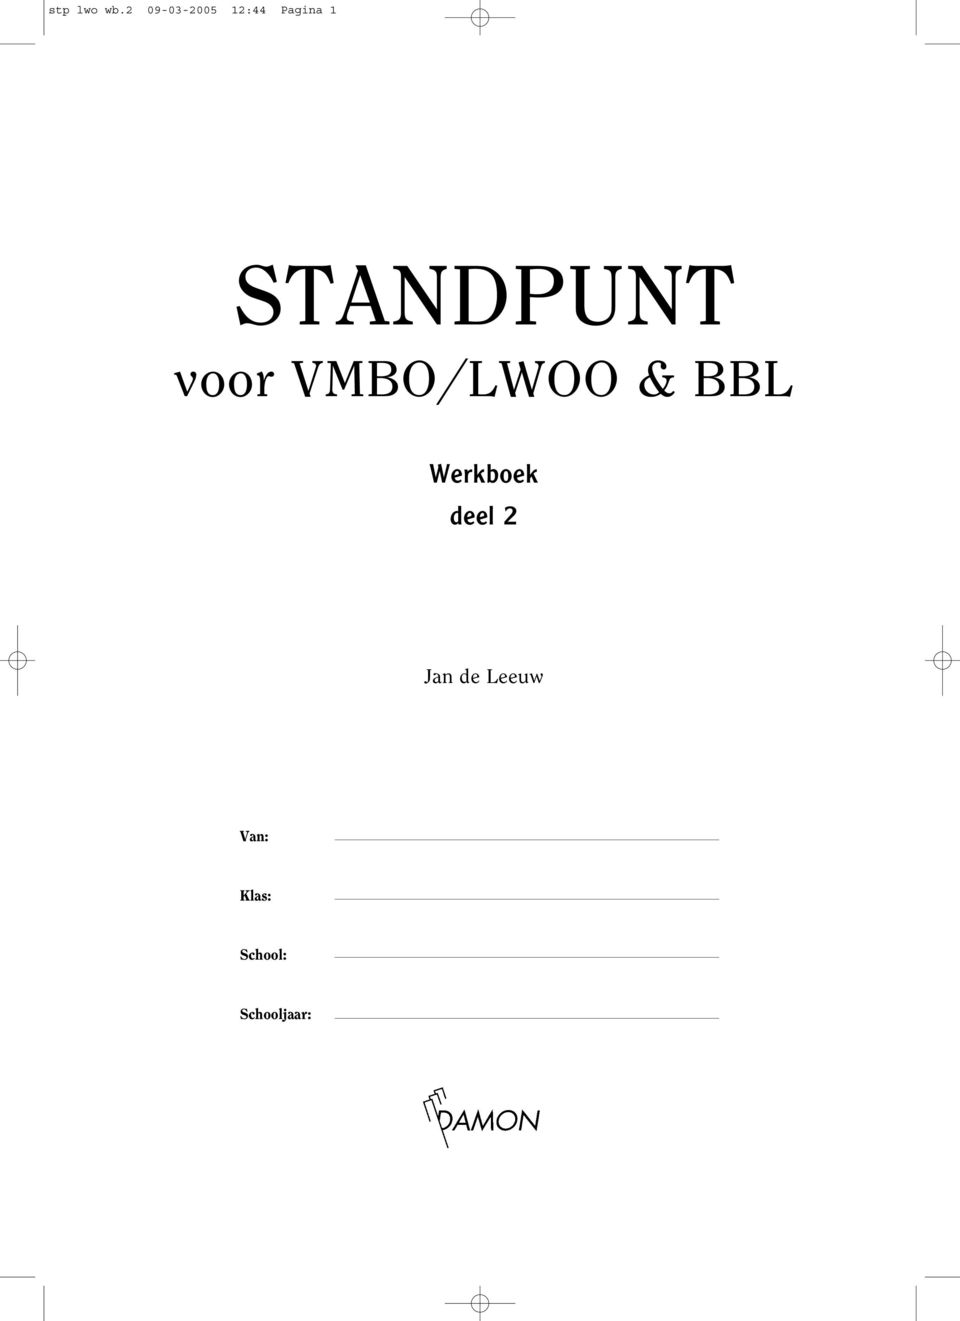 STANDPUNT voor VMBO/LWOO & BBL